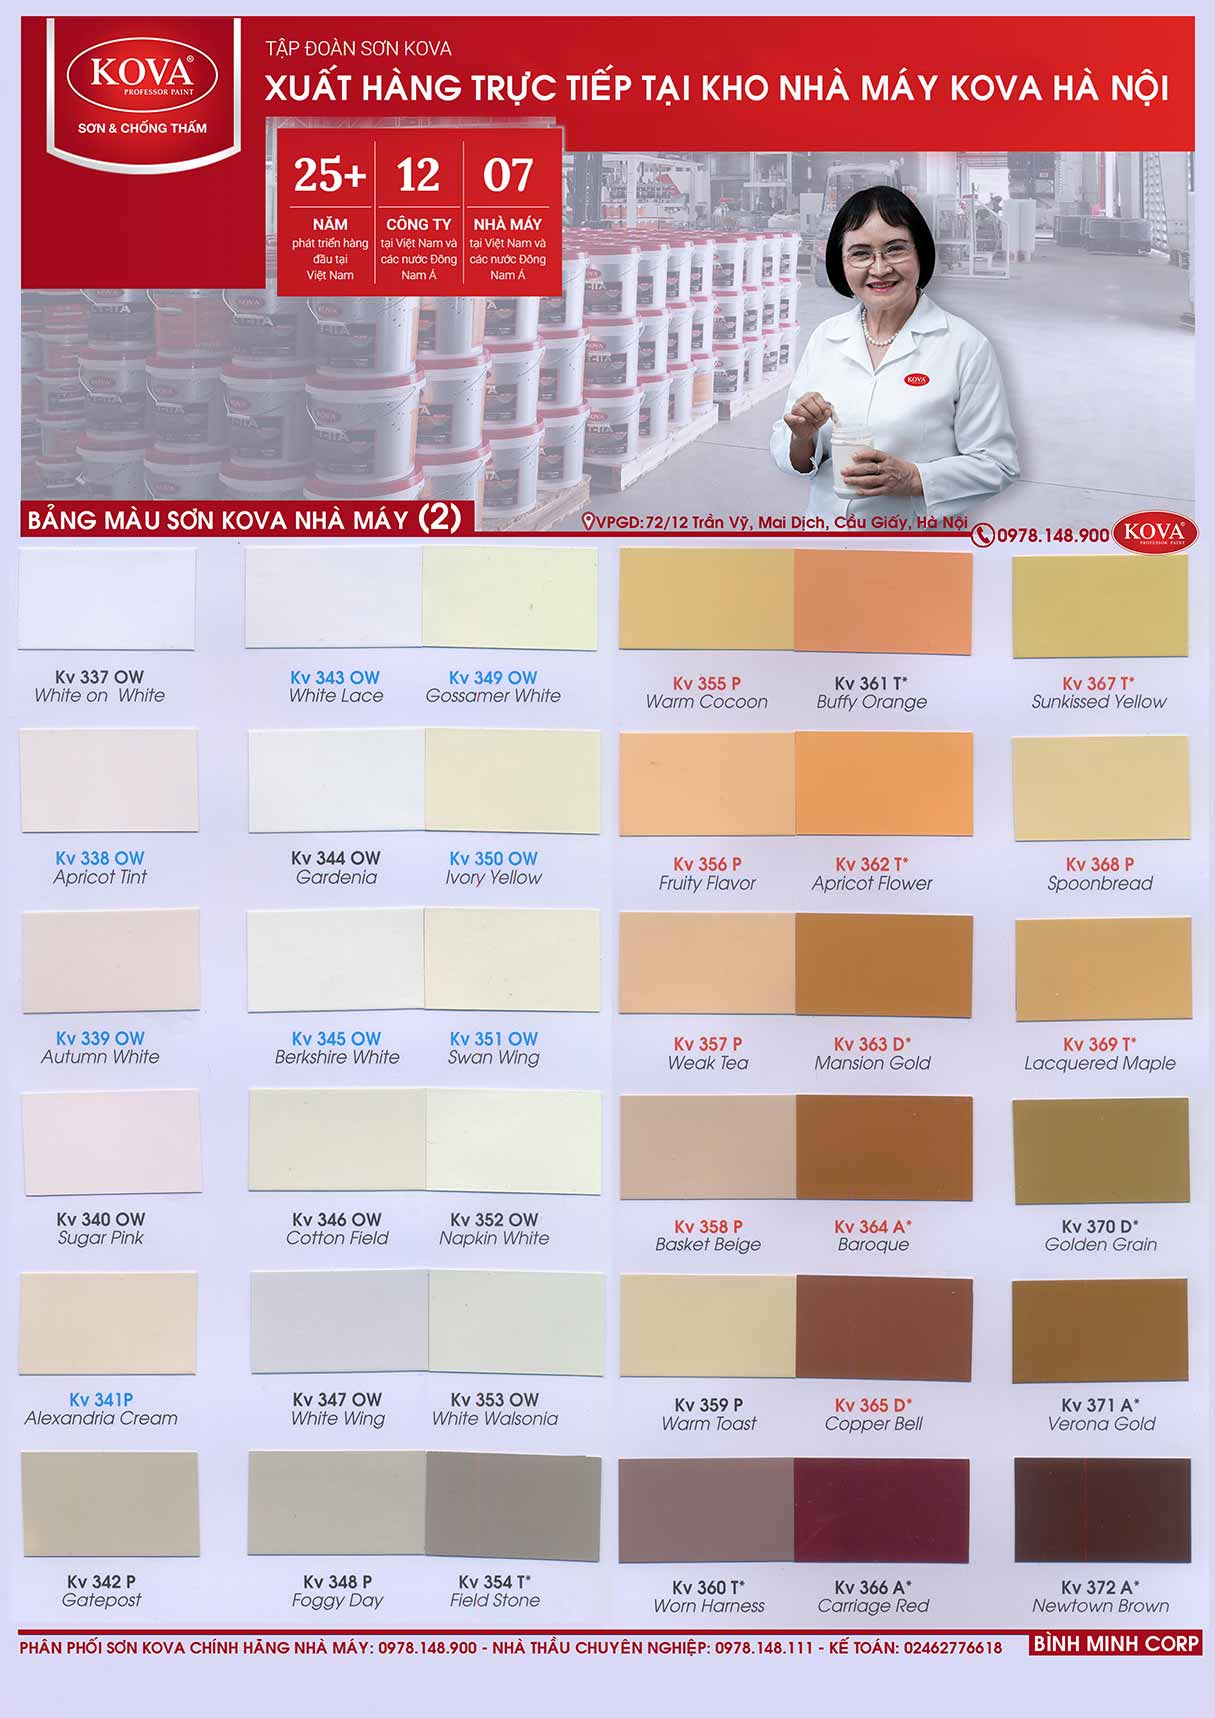 Màu sơn Epoxy Kova: Màu sơn Epoxy Kova với độ bền cao và kiểu dáng hiện đại sẽ giúp cho nhà của bạn thêm phần sang trọng và ấn tượng. Hãy khám phá ngay các gam màu sắc tuyệt vời của sơn Kova để có thể lựa chọn sản phẩm phù hợp cho gia đình mình nhé!